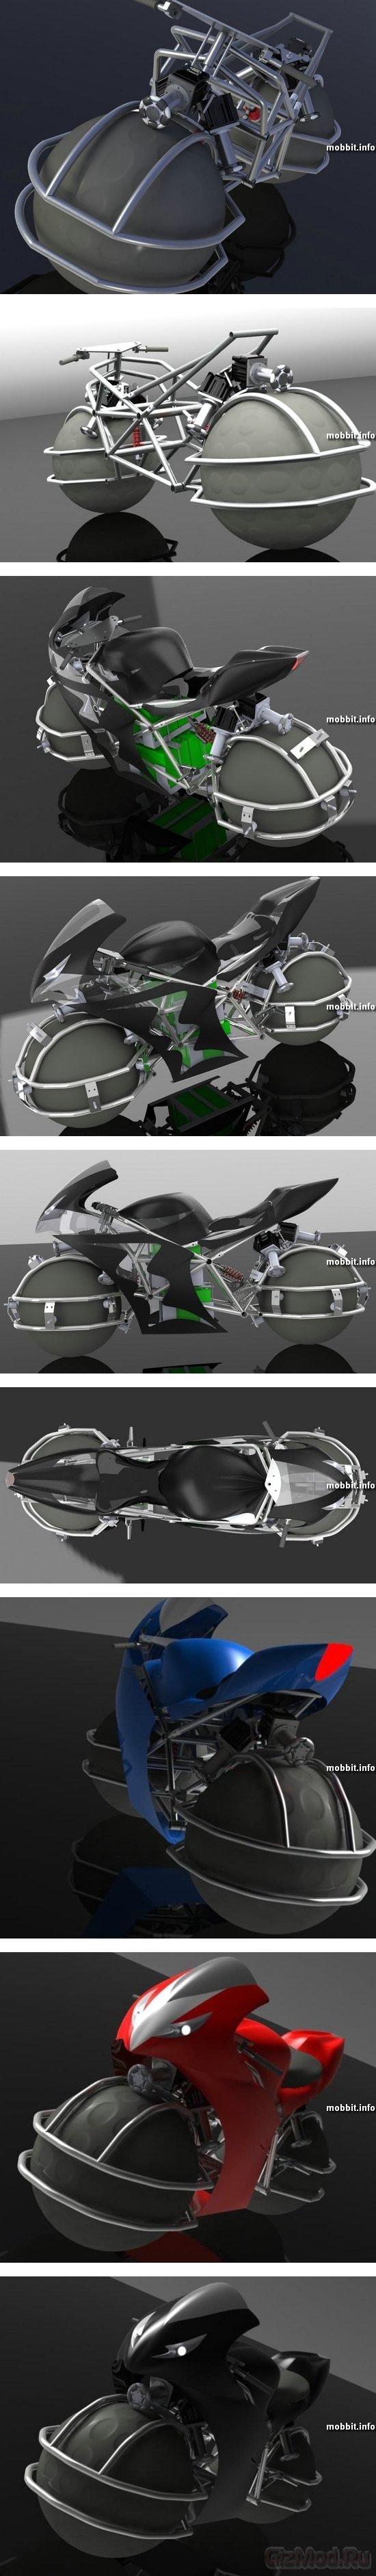 Сферические колеса в мотоцикле Spherical Drive System